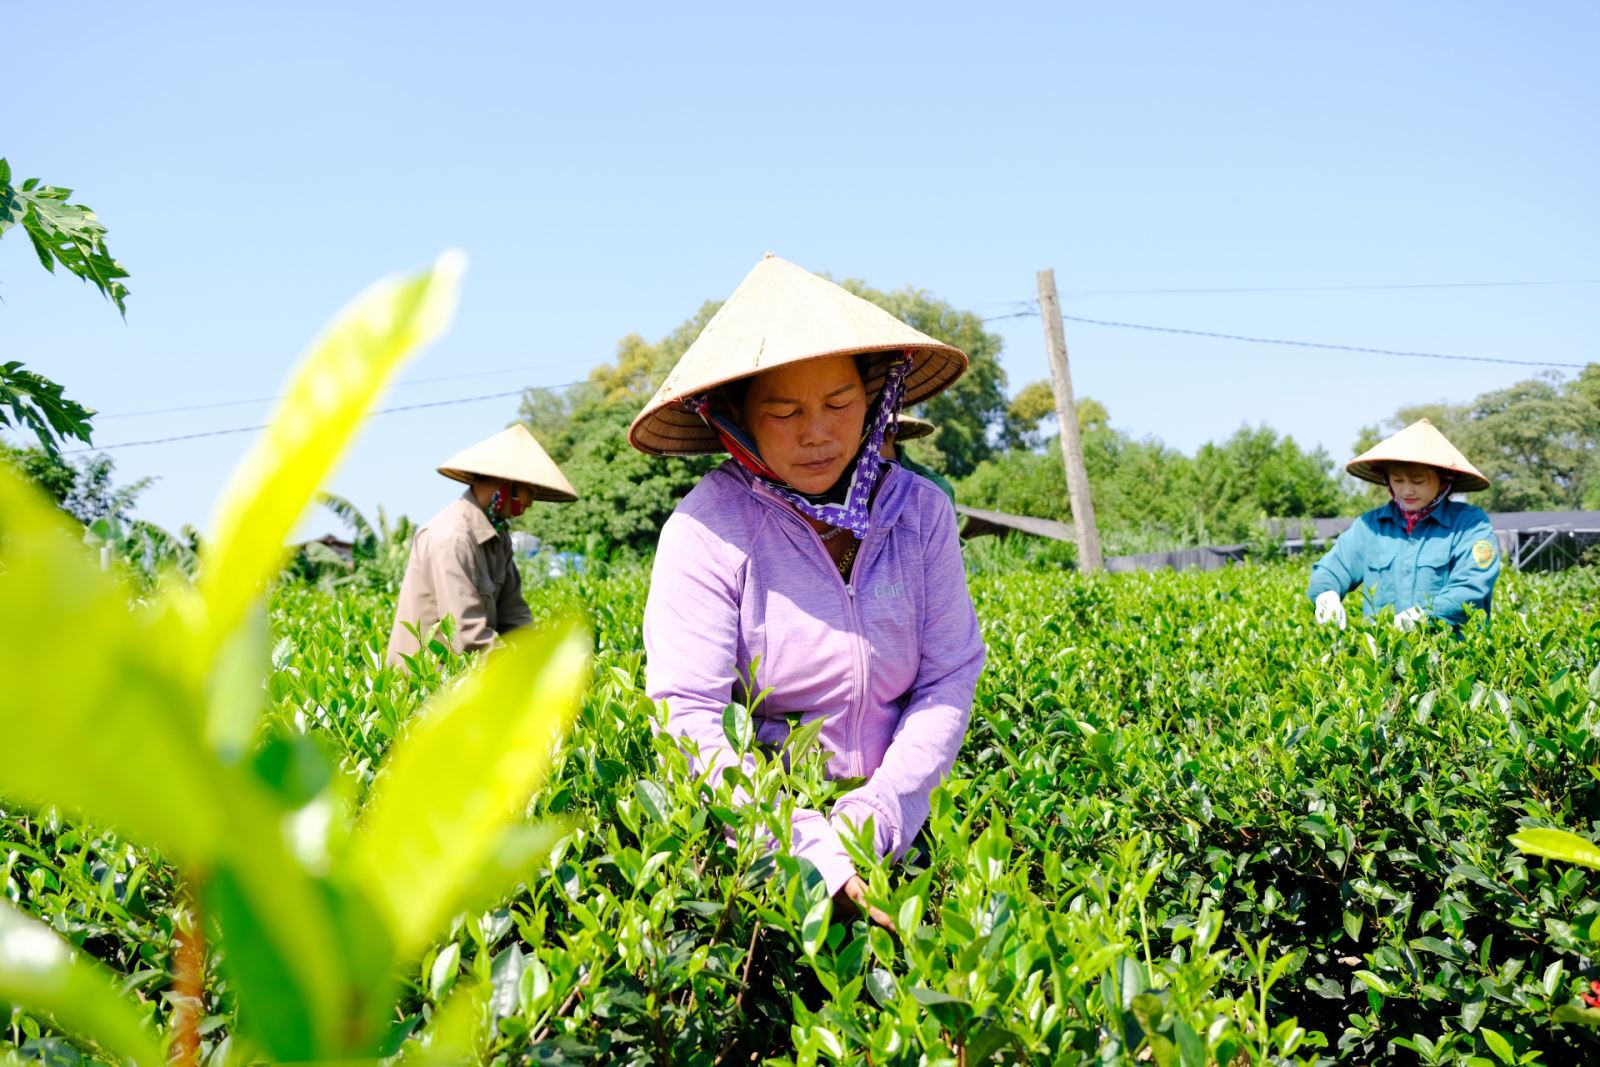  Gia đình cô Phạm Thị Vân đã có 3 đời gắn bó với nghề trồng, chế biến chè.